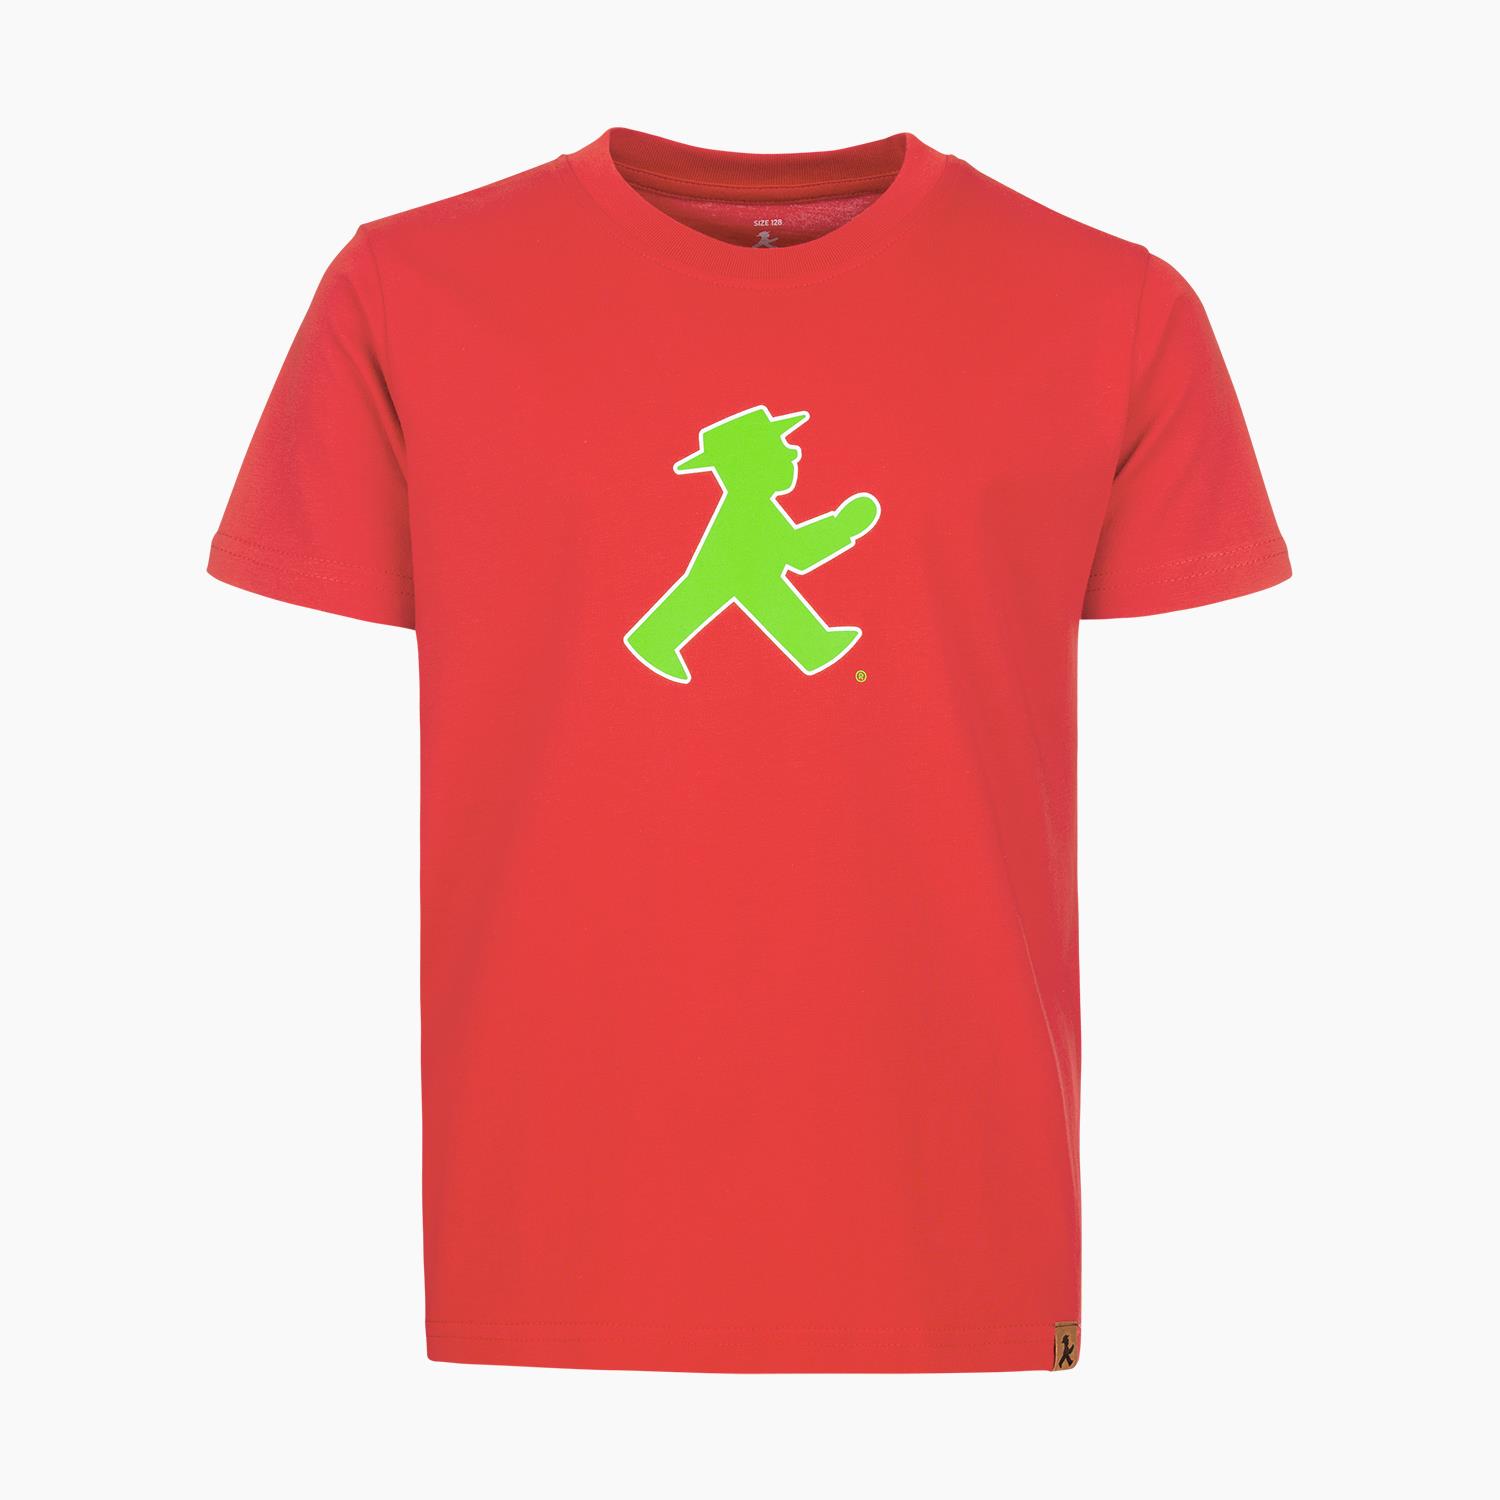 PRACHTKERLCHEN red 92/ Kids T-Shirt